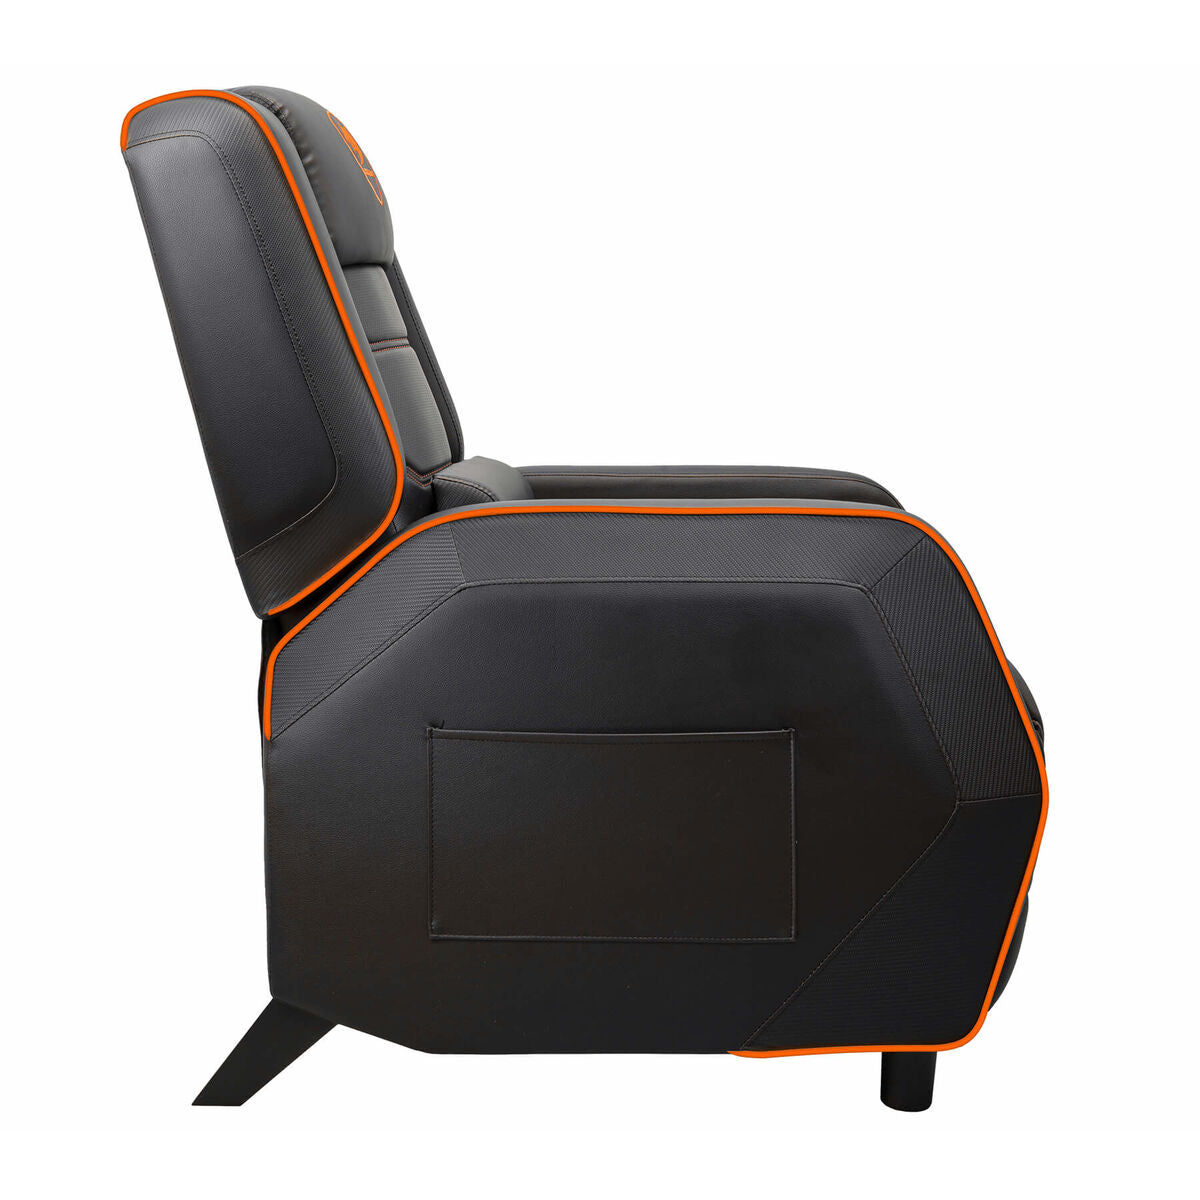 Sofa gaming Cougar Ranger S Black/Orange